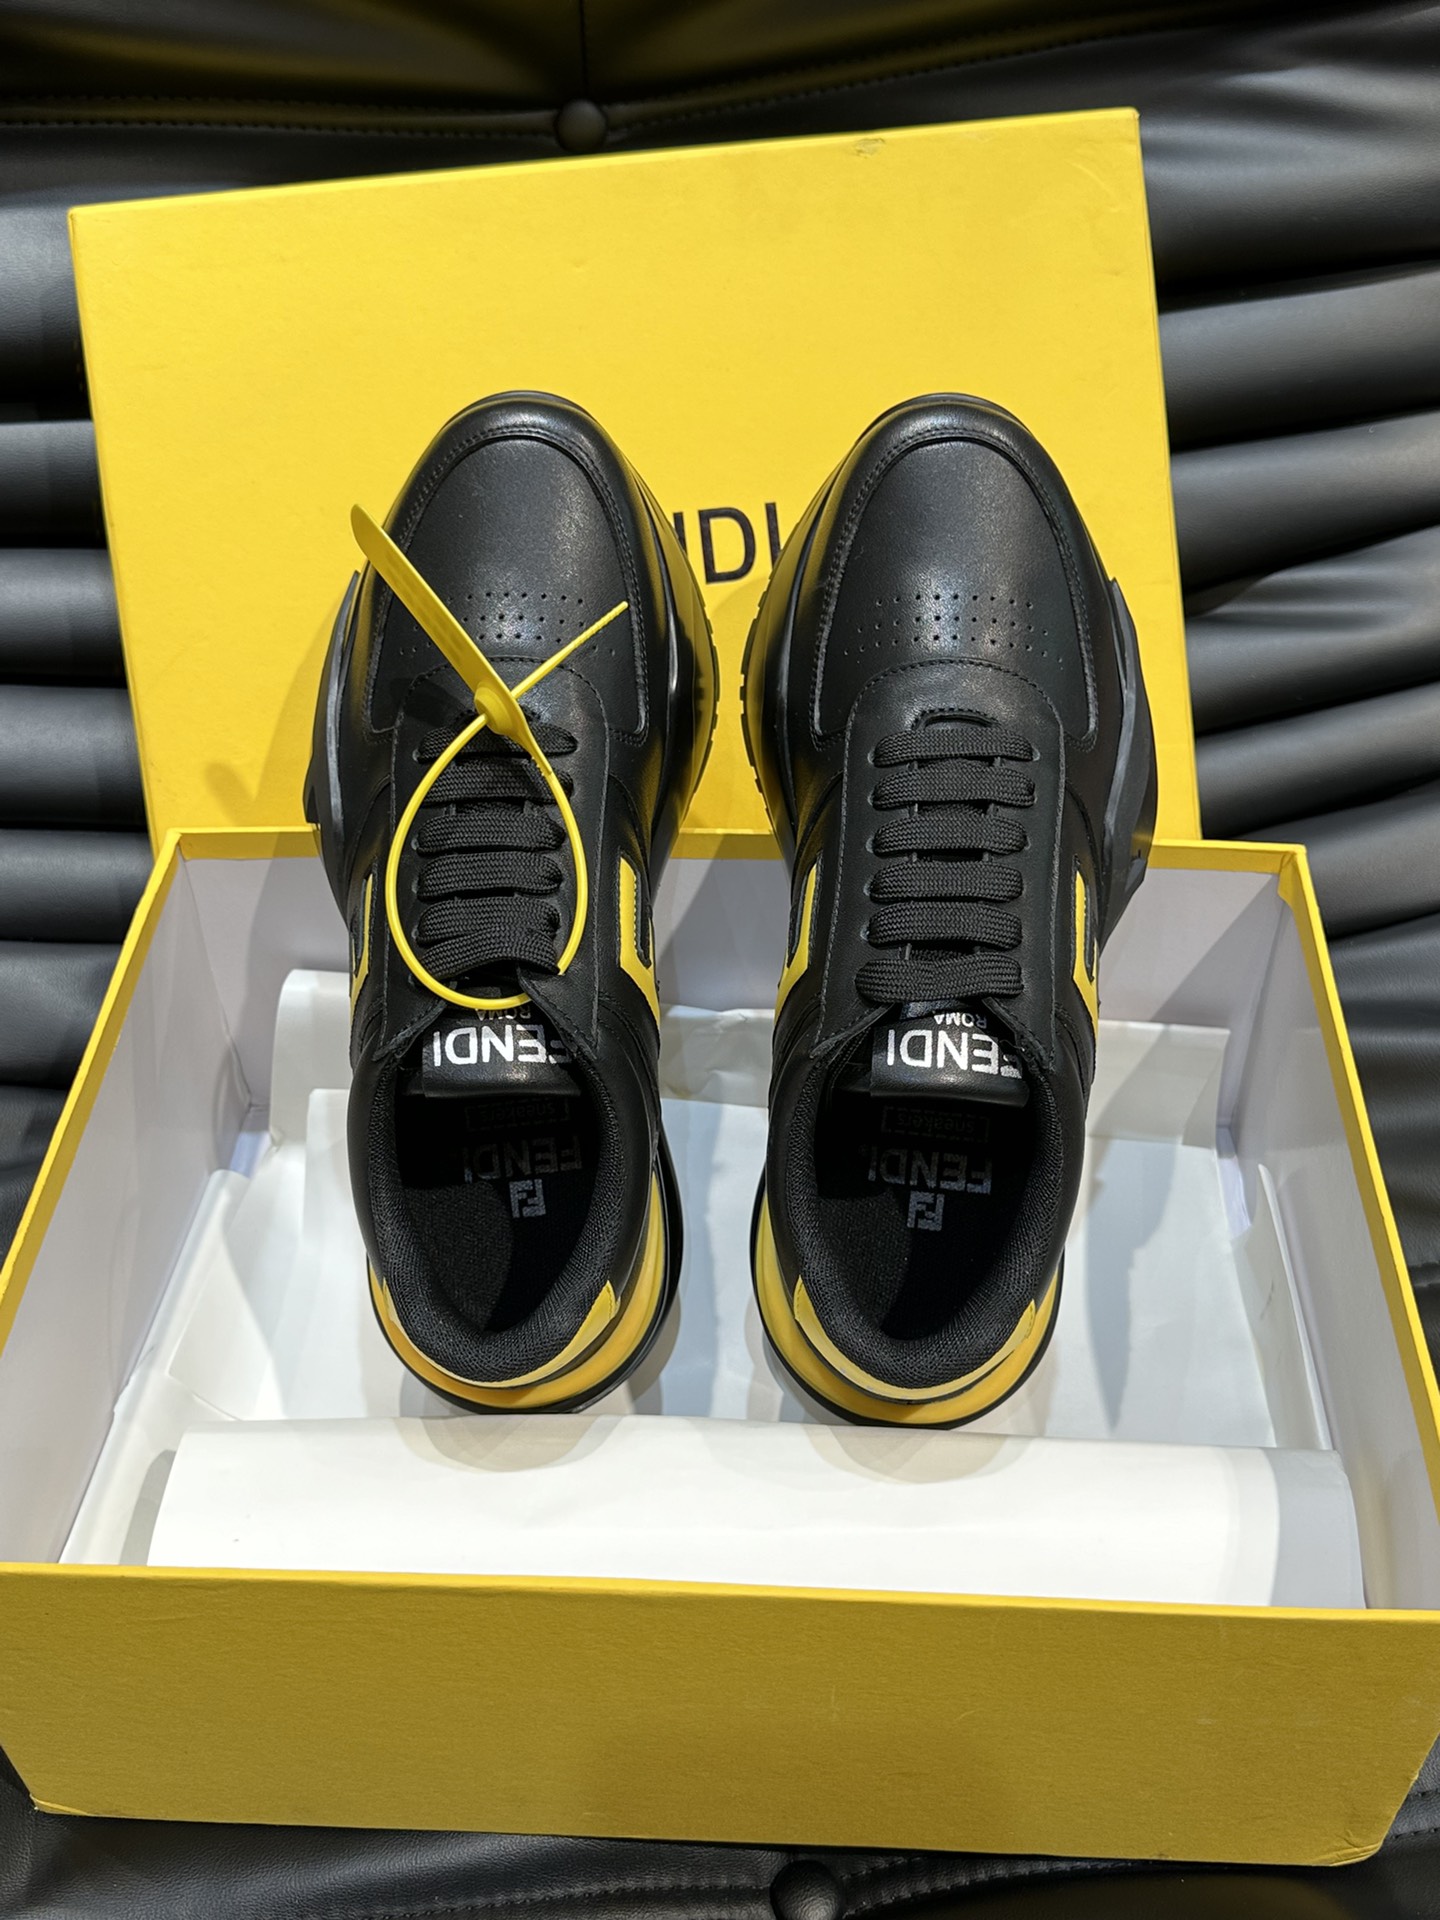 FENDI/芬迪男士新款系带运动鞋出货采用近几年比较流行的版型设计外观时尚大气由高科技布料拼接绒面皮革打